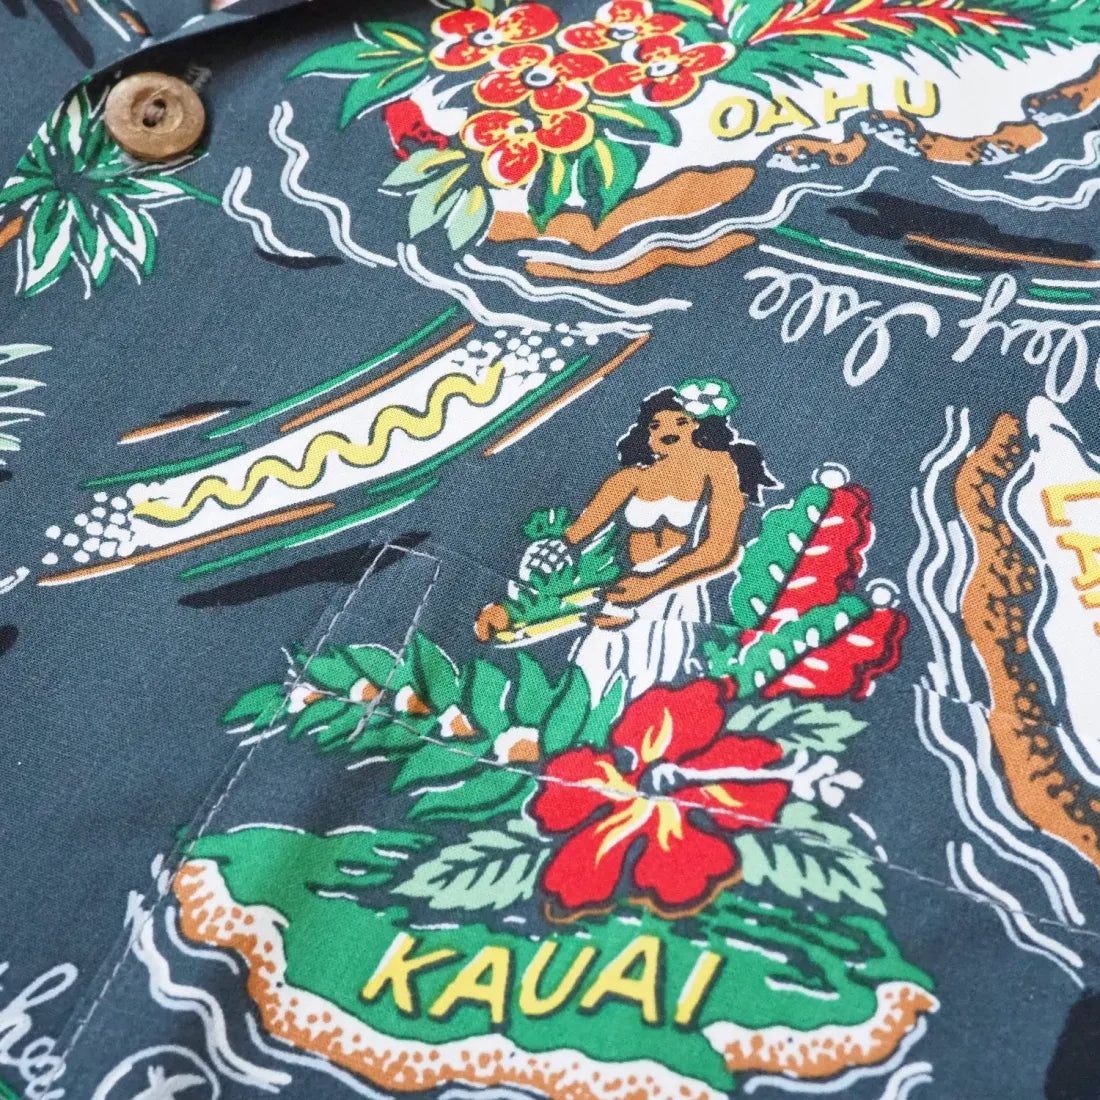 Pacific Grey Hawaiian Rayon Shirt - Made In Hawaii